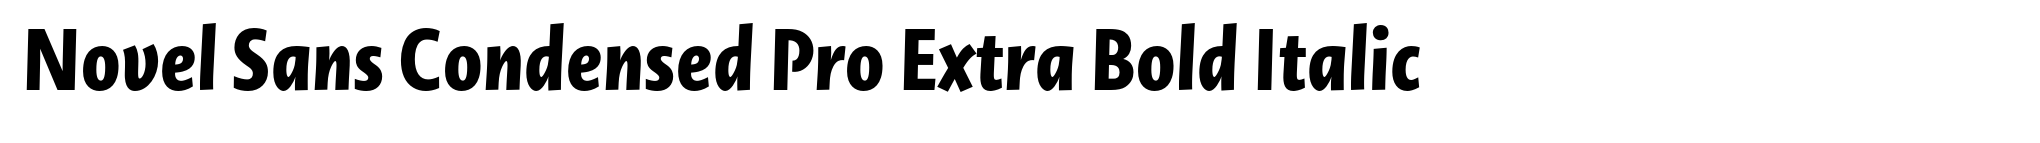 Novel Sans Condensed Pro Extra Bold Italic image